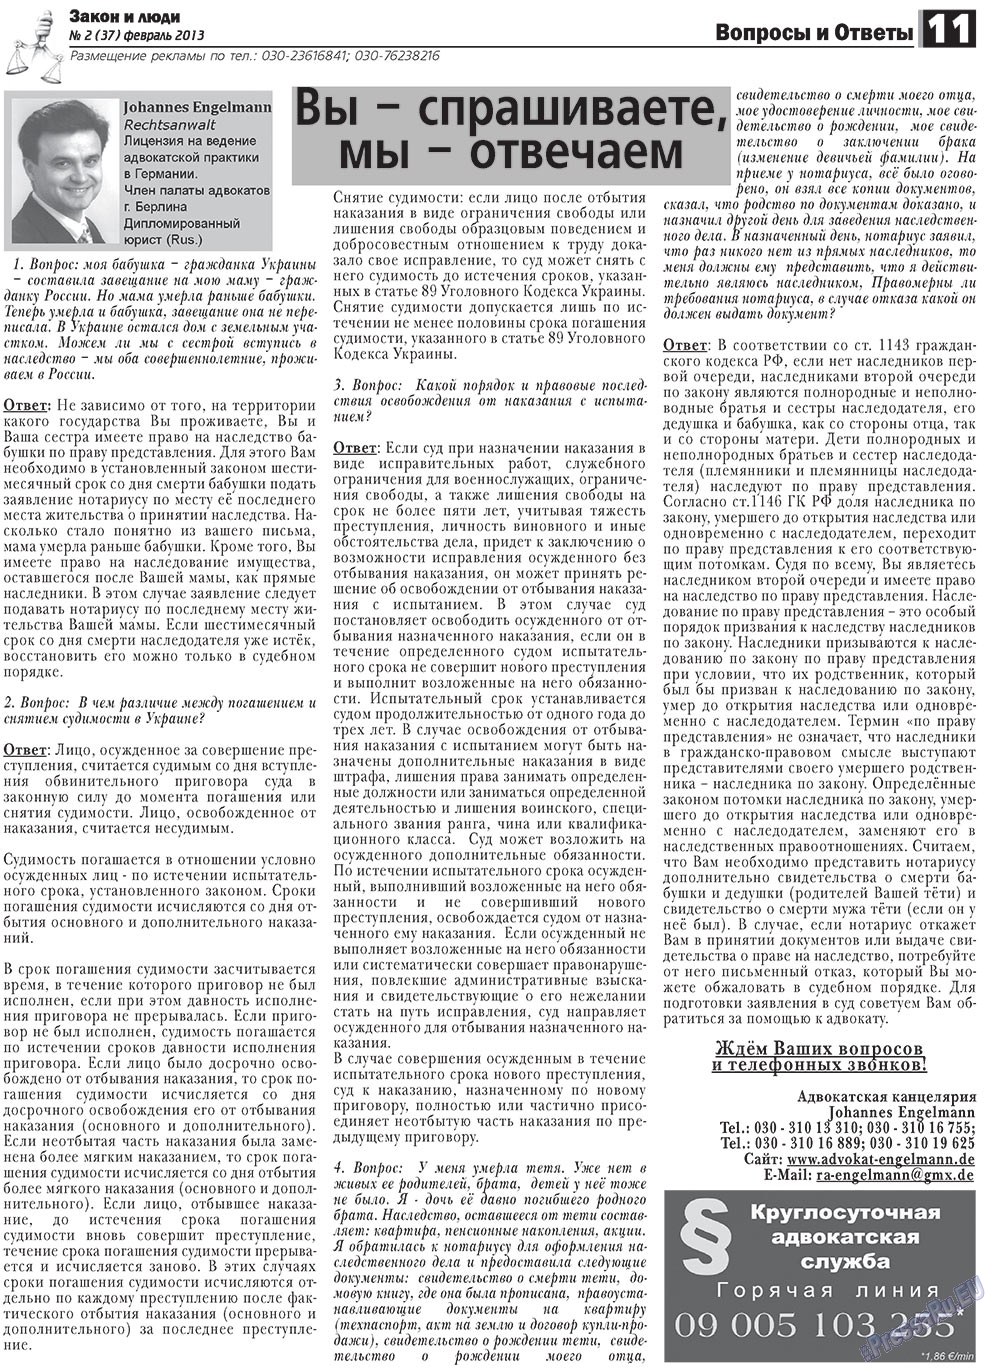 Закон и люди (газета). 2013 год, номер 2, стр. 11